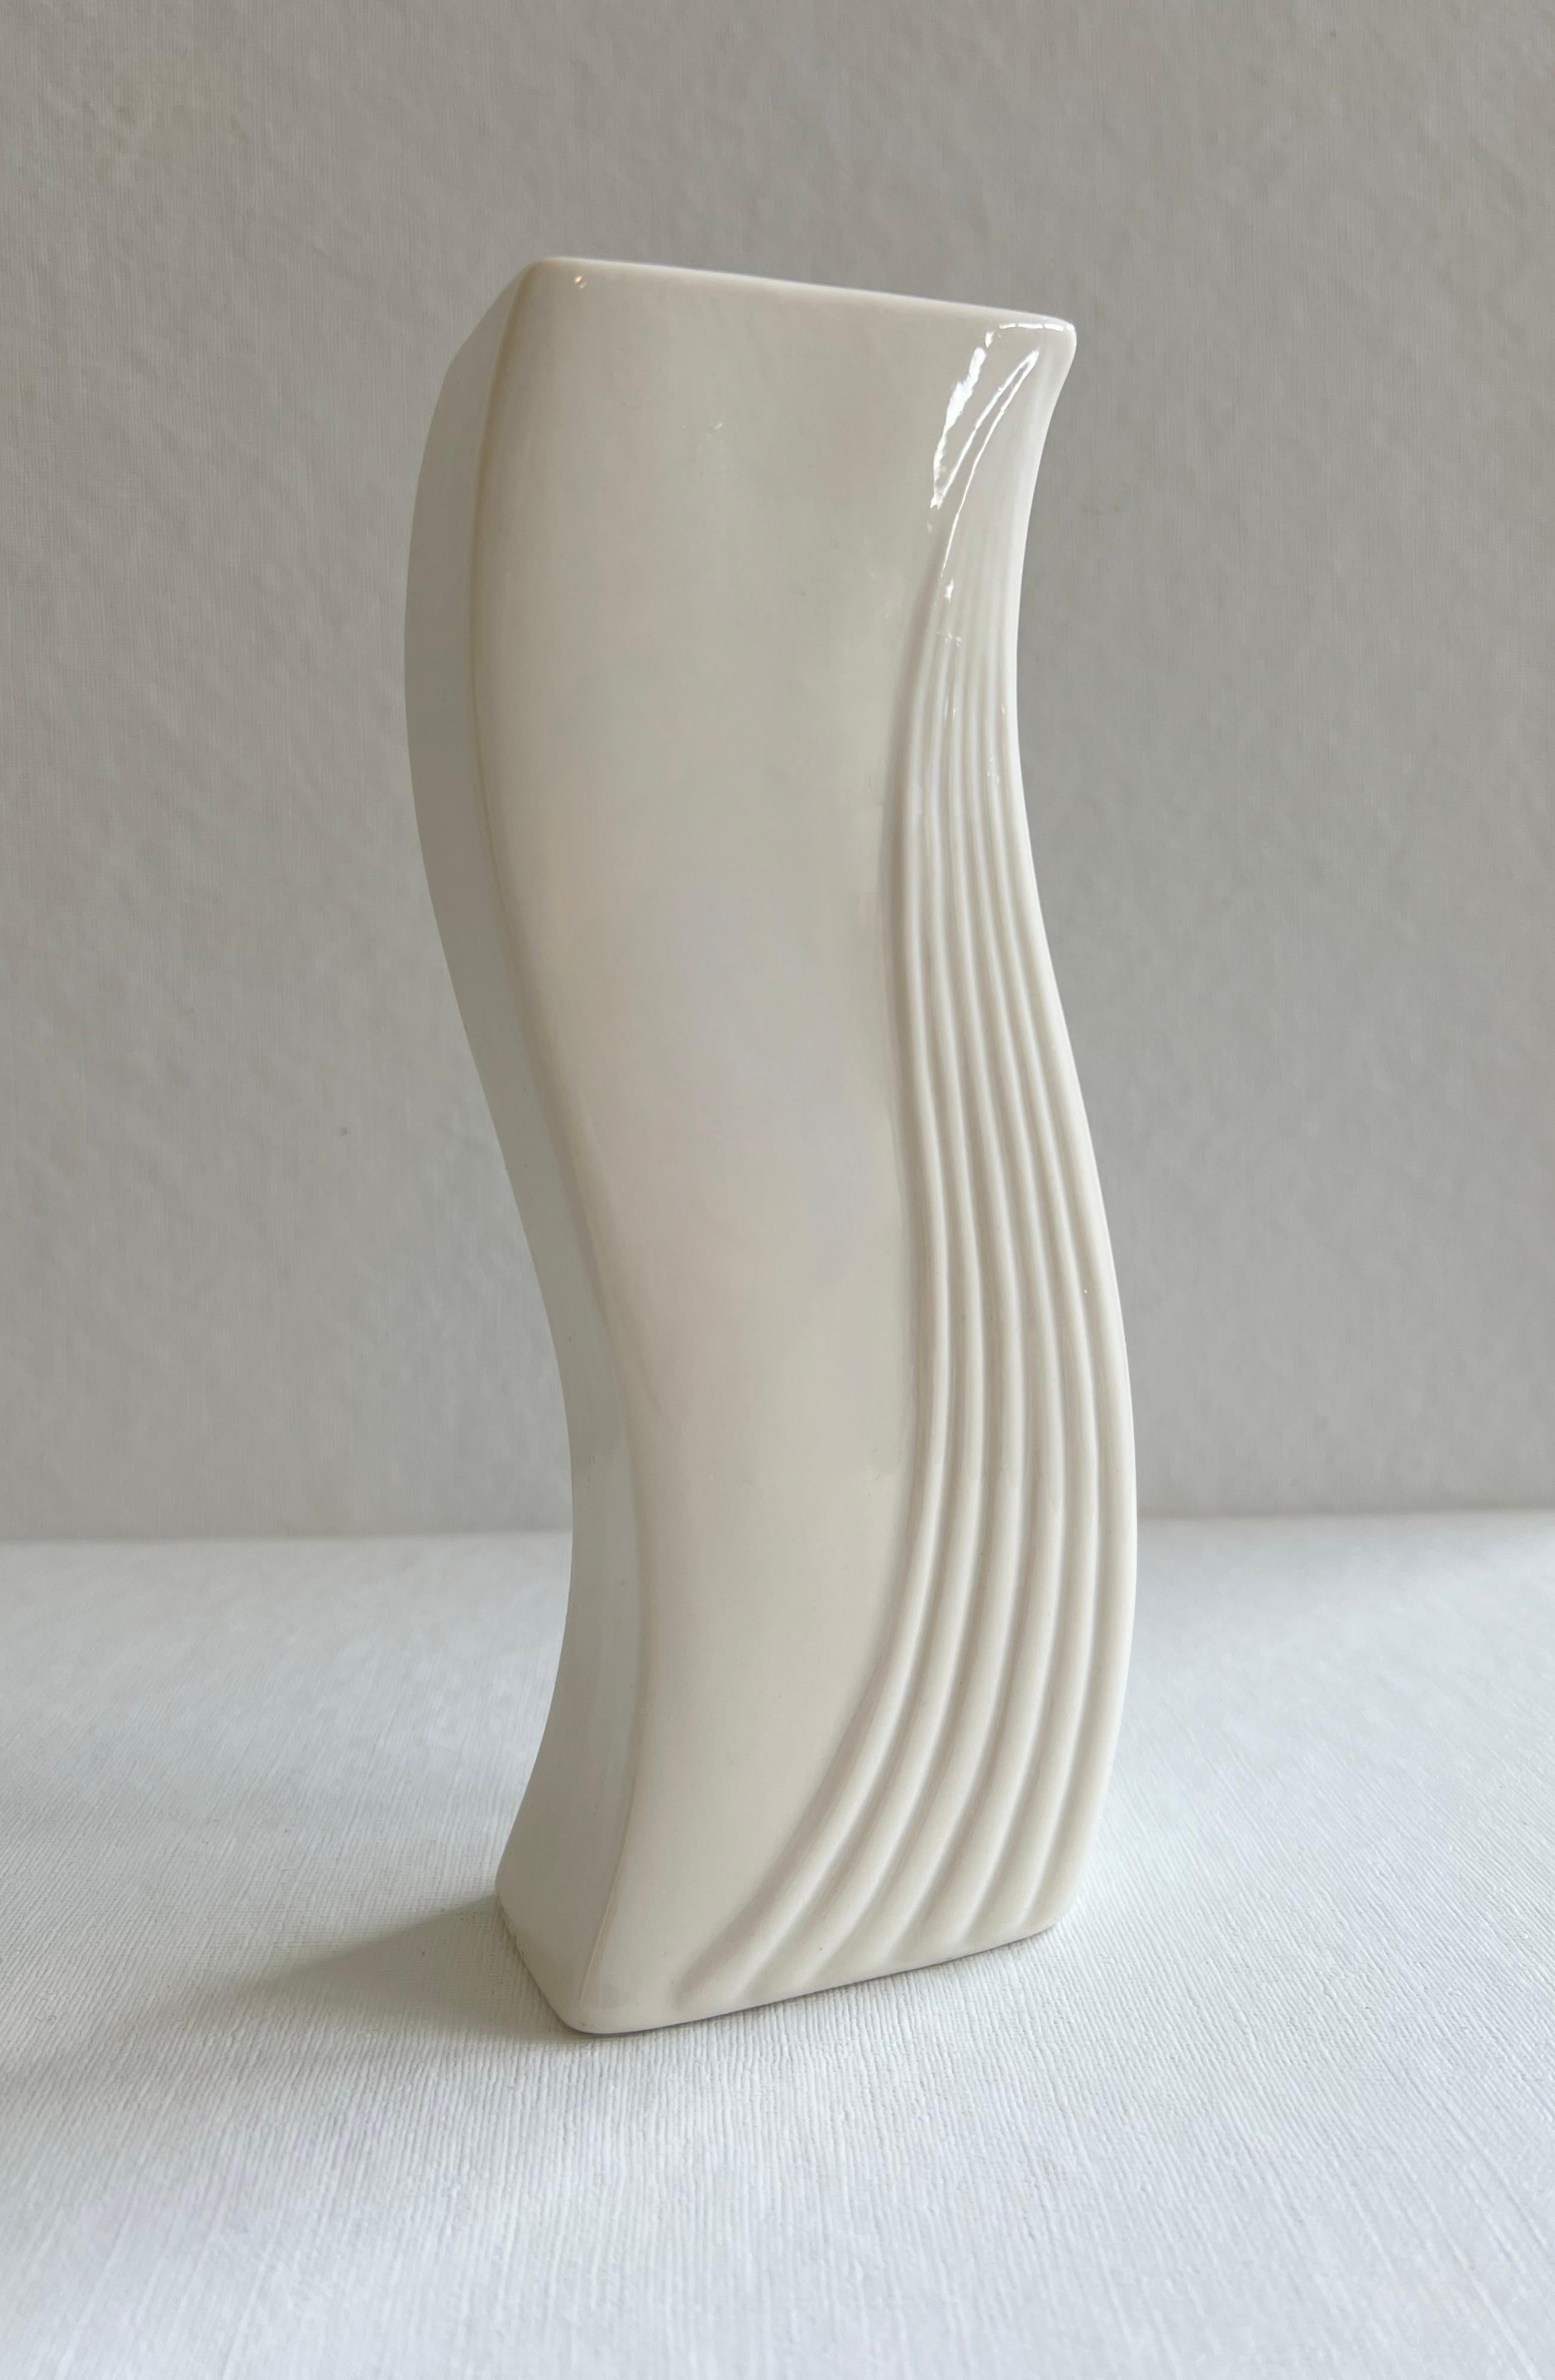 Magnifique bougeoir de style art déco de Belleek Pottery Ltd, Irlande. Ce bougeoir en porcelaine crème présente de jolies lignes.  Délicat, simple et élégant à la fois. Marque du fabricant sur le fond.